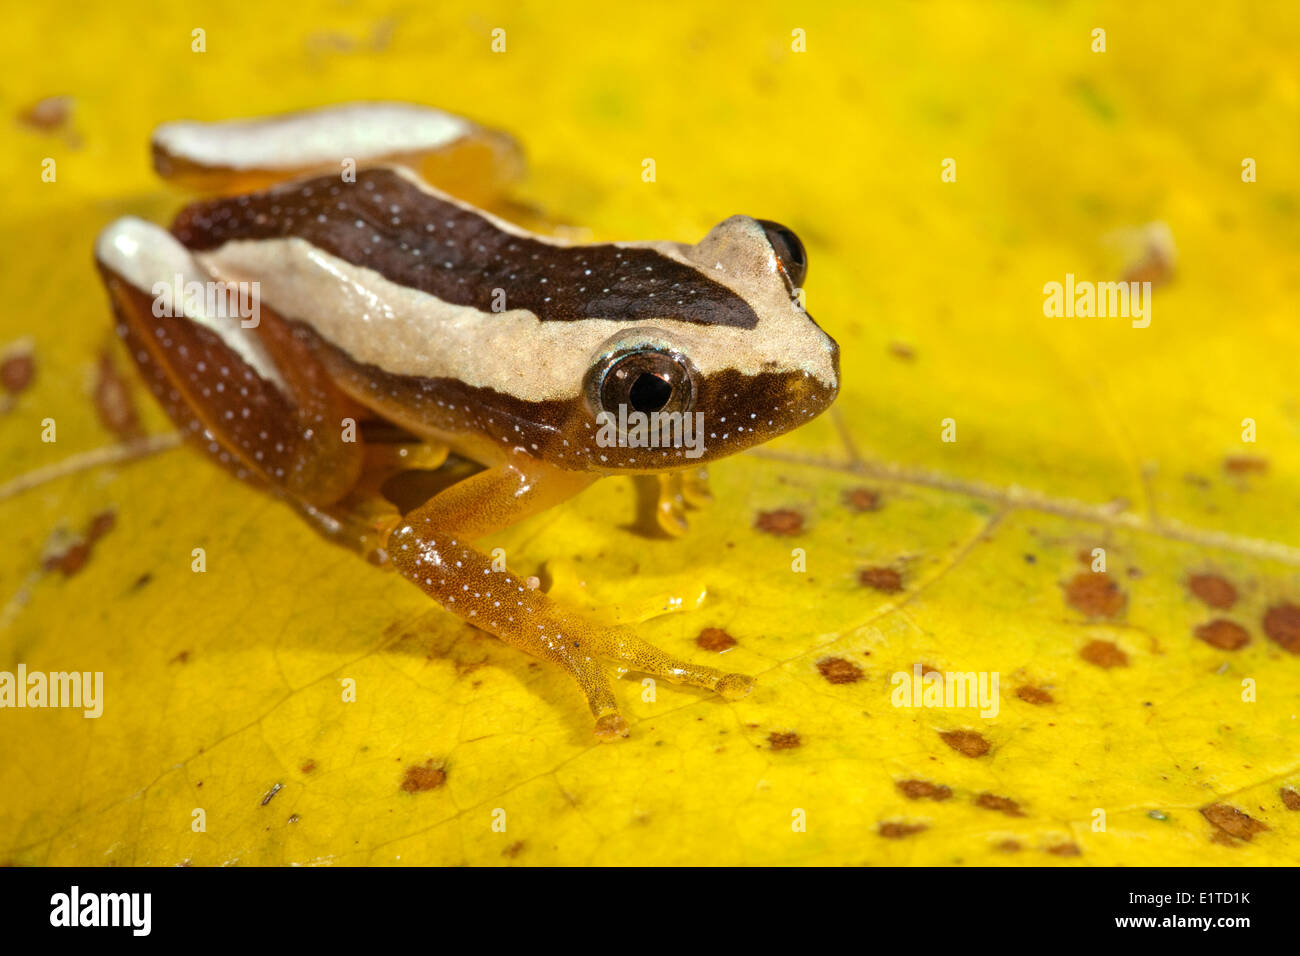 Foto von einem größeren Blatt Falten Frosch; Stockfoto